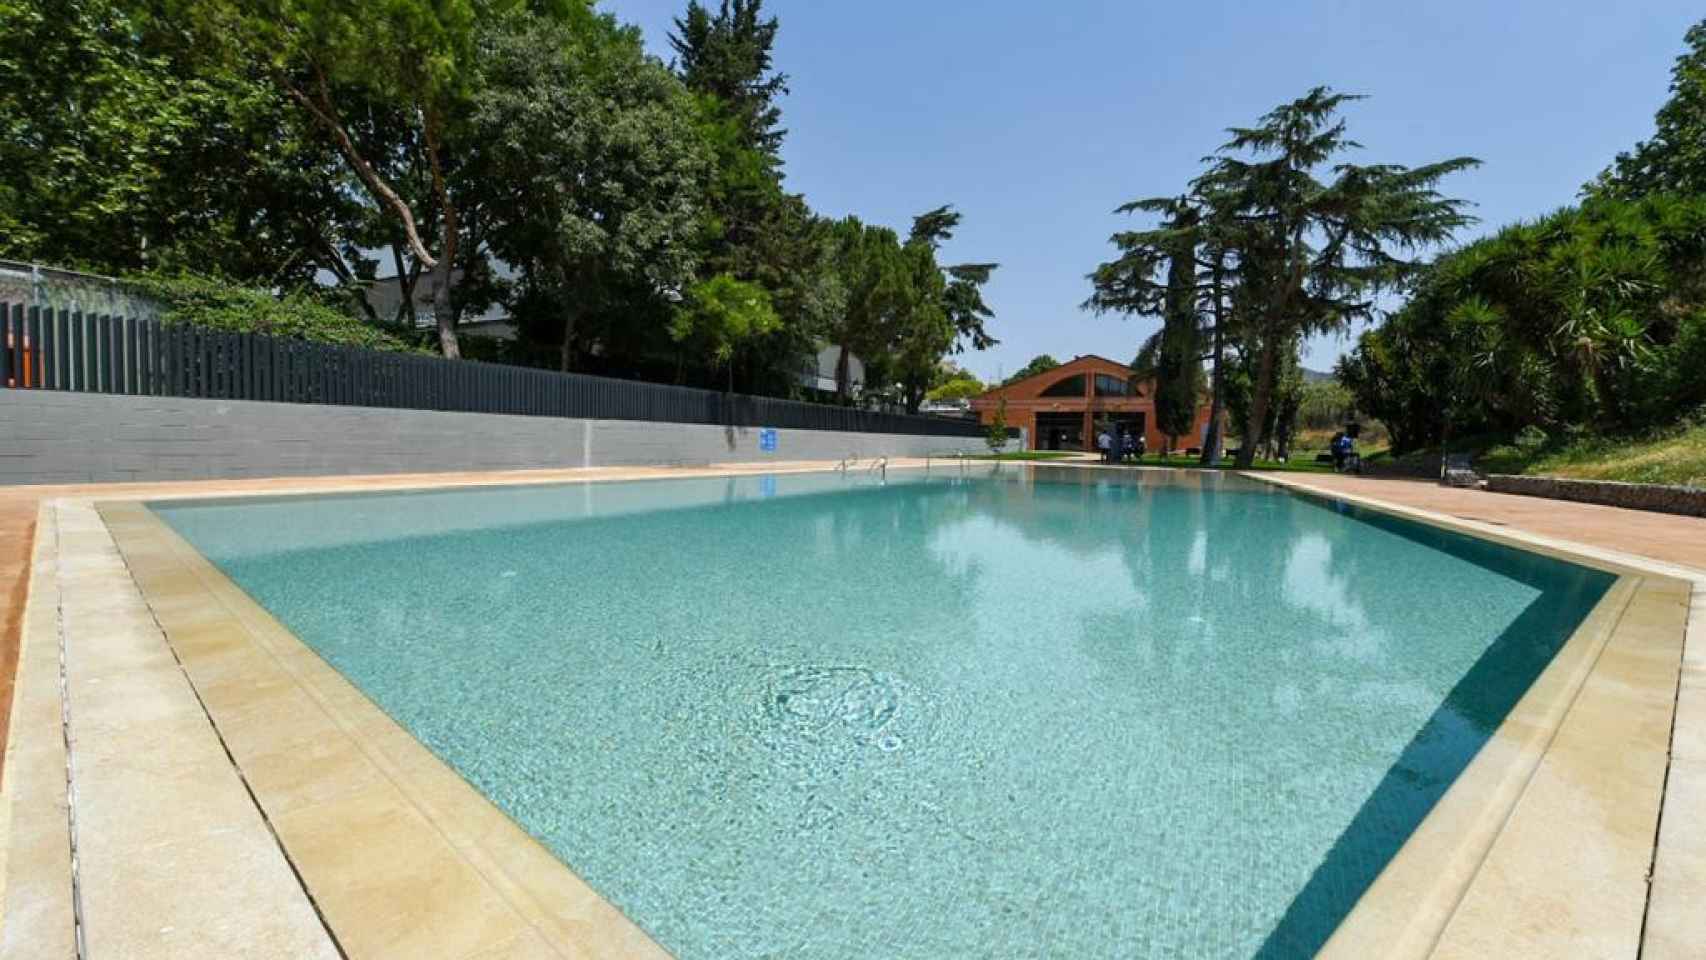 La piscina exterior de Trinitat Vella / AJUNTAMENT DE BARCELONA